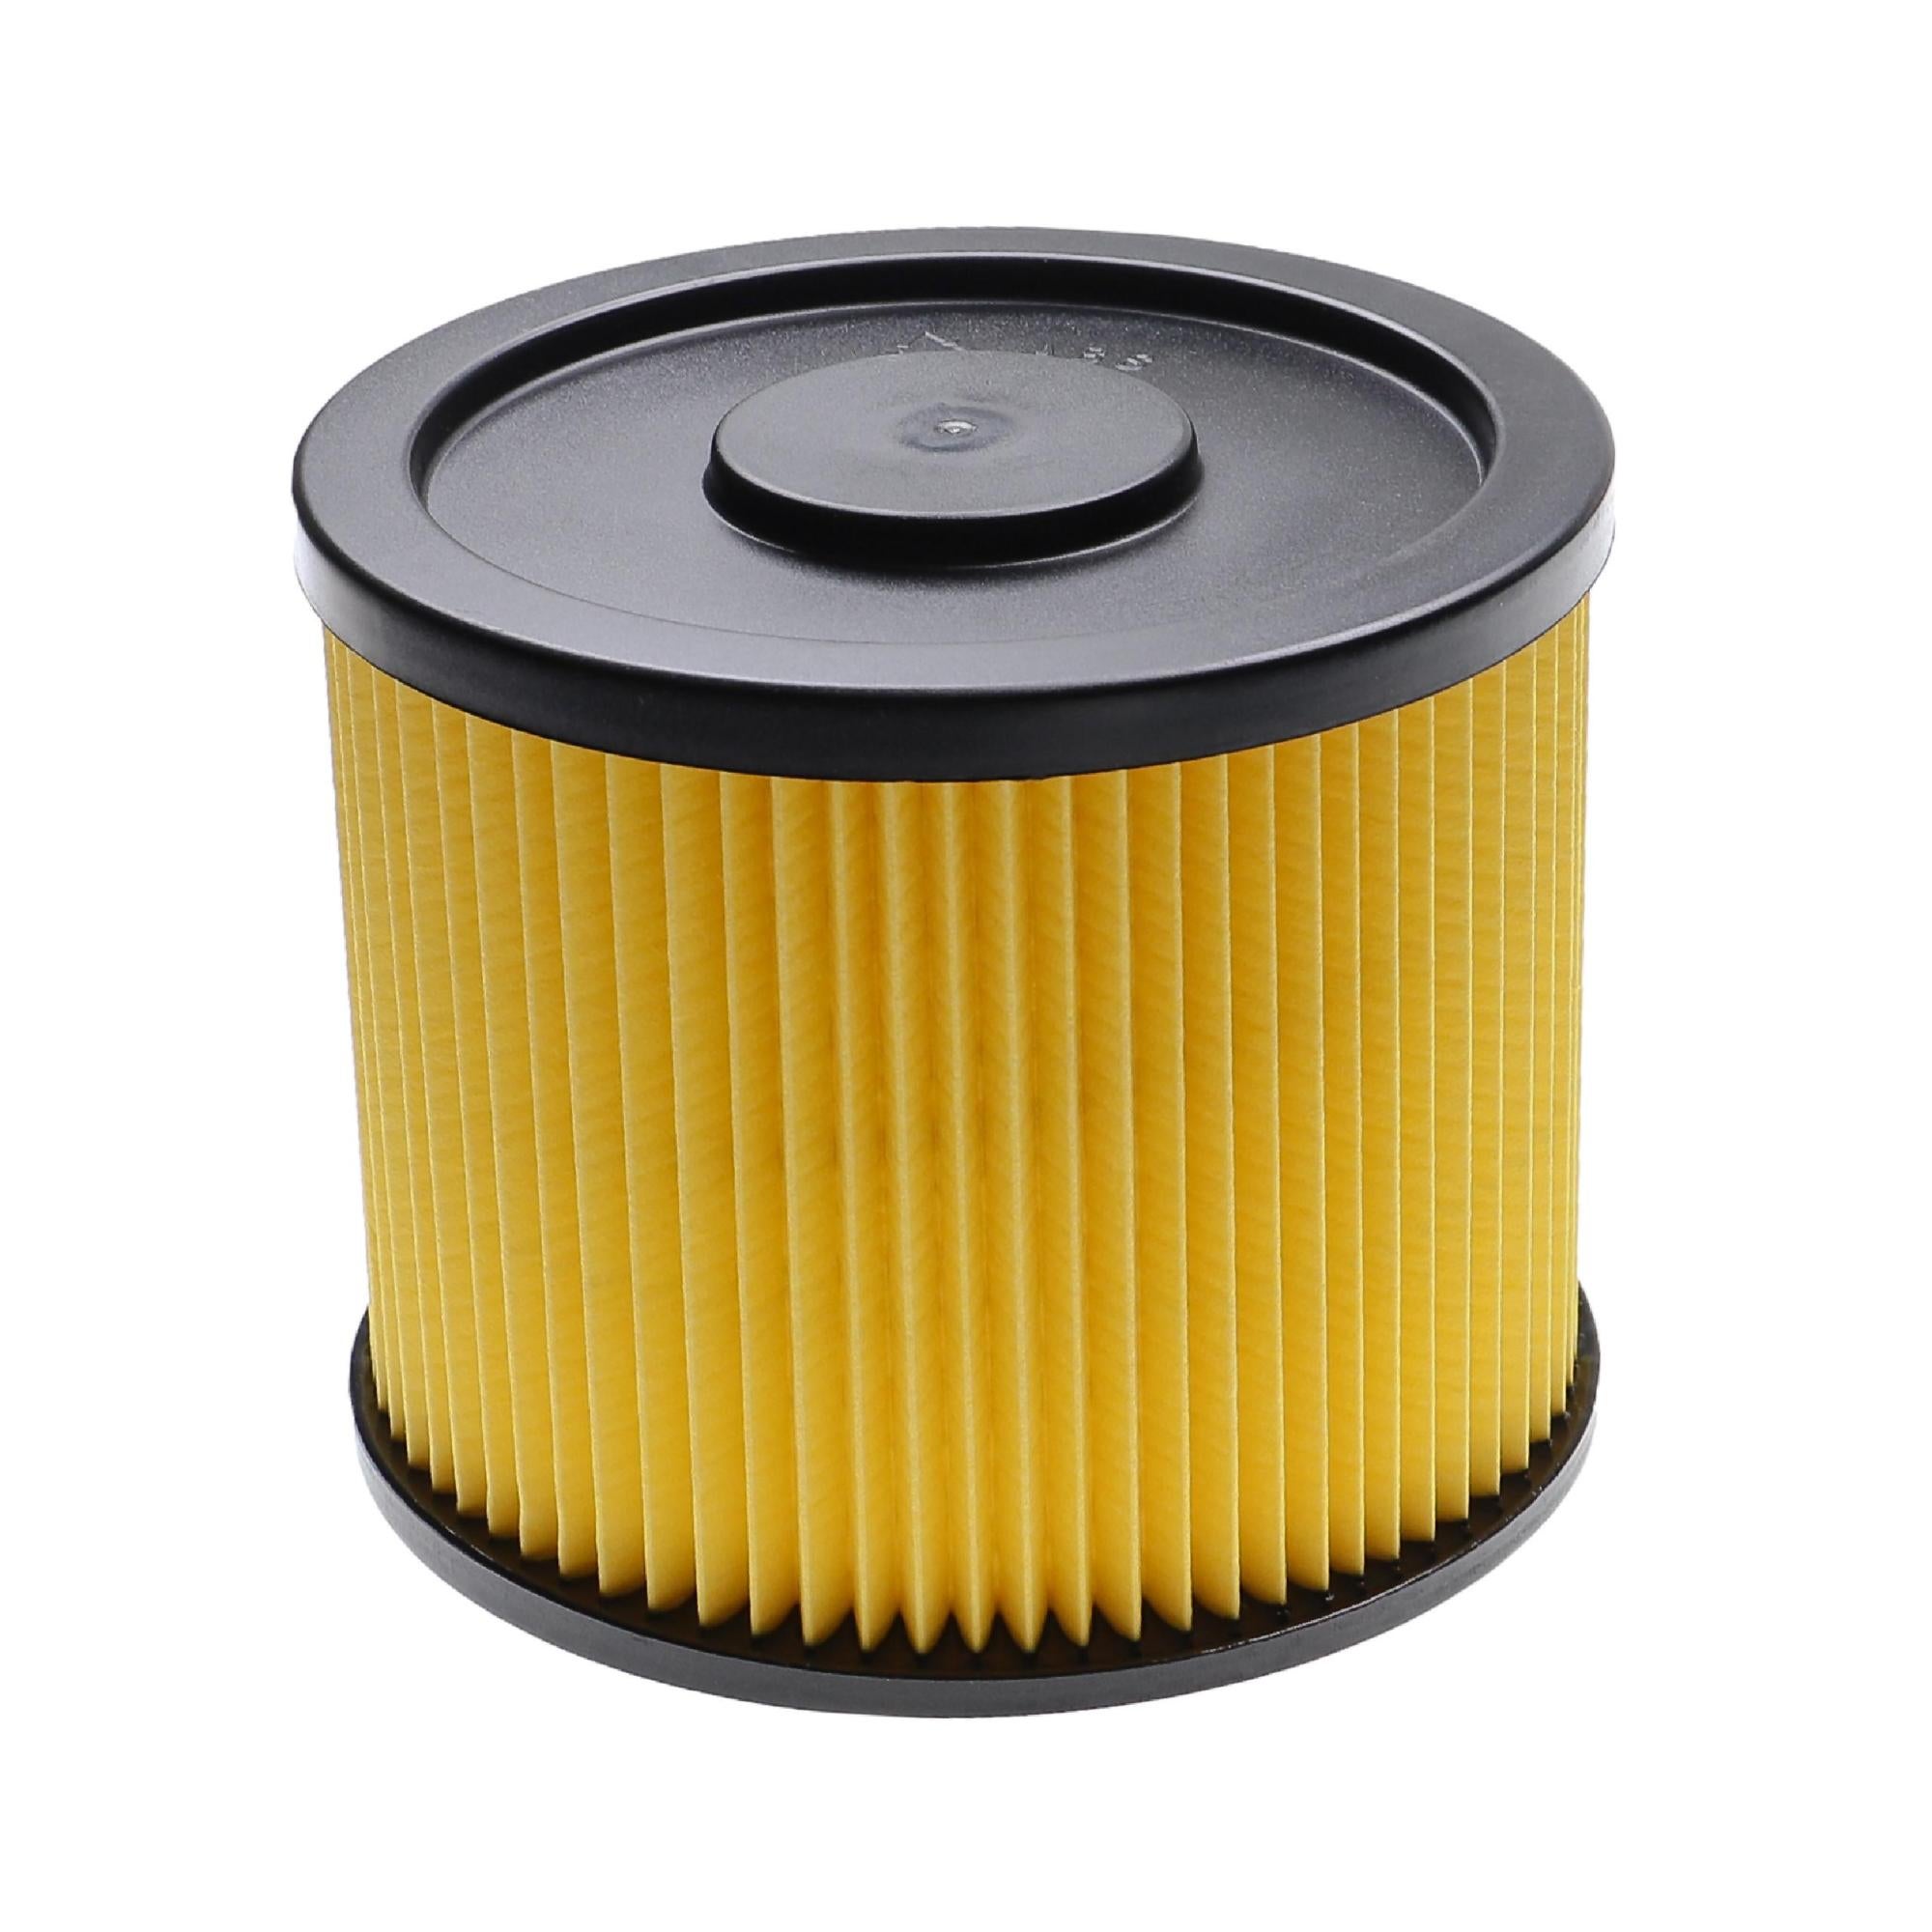 cubic despise Bulk Vhbw Filtre d'aspirateur compatible avec Lidl / Parkside PNTS 1400 F2, 1500  A1, 1500 B2, 1500 B3, 1500 C4 aspirateur - filtre plissé | Leroy Merlin